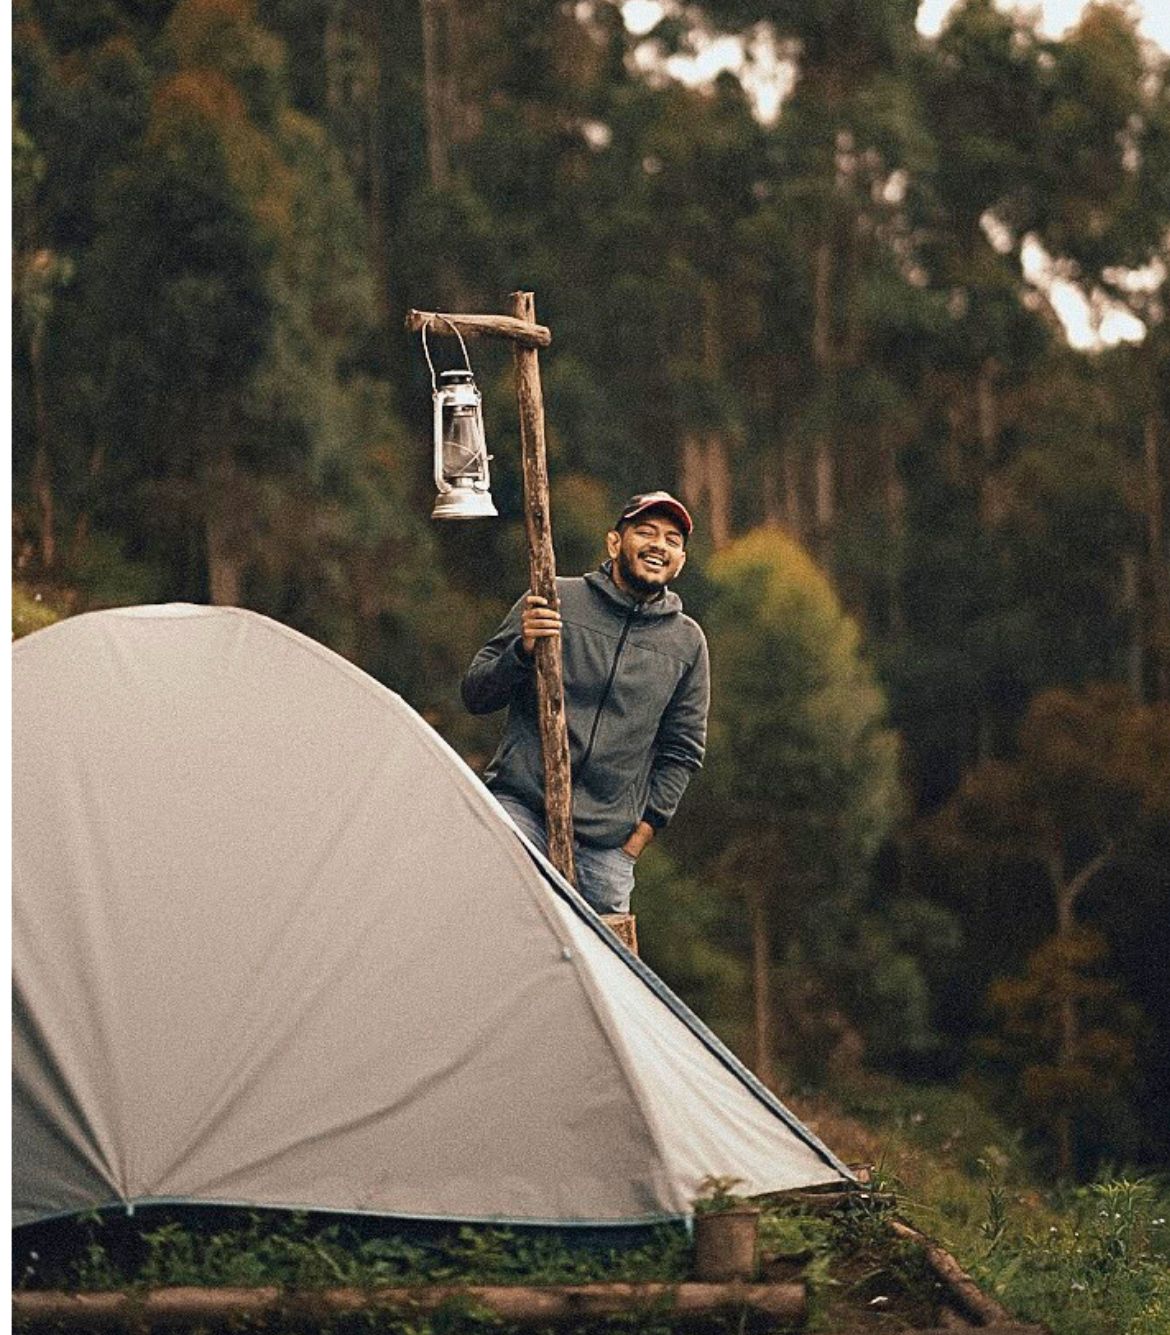 Vattavada Camping at Lofty Trails